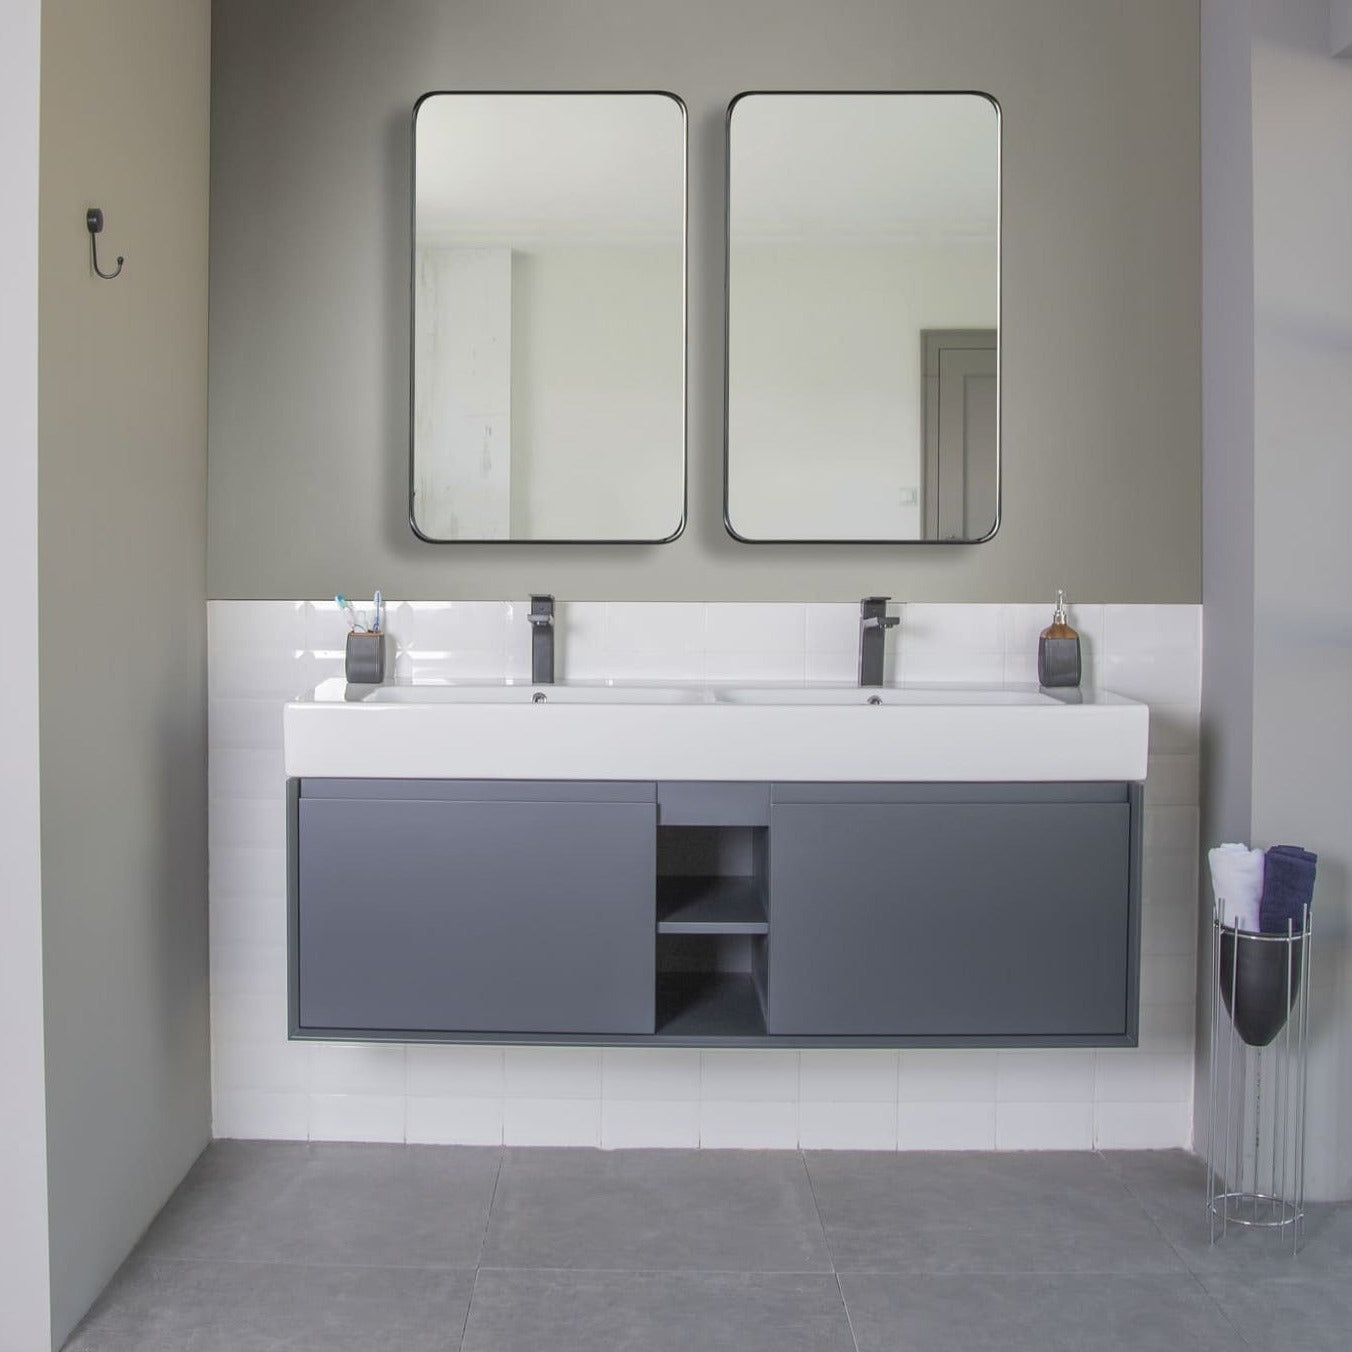 Gala Bathroom Vanity Homelero 60" #size_60" #color_dark grey